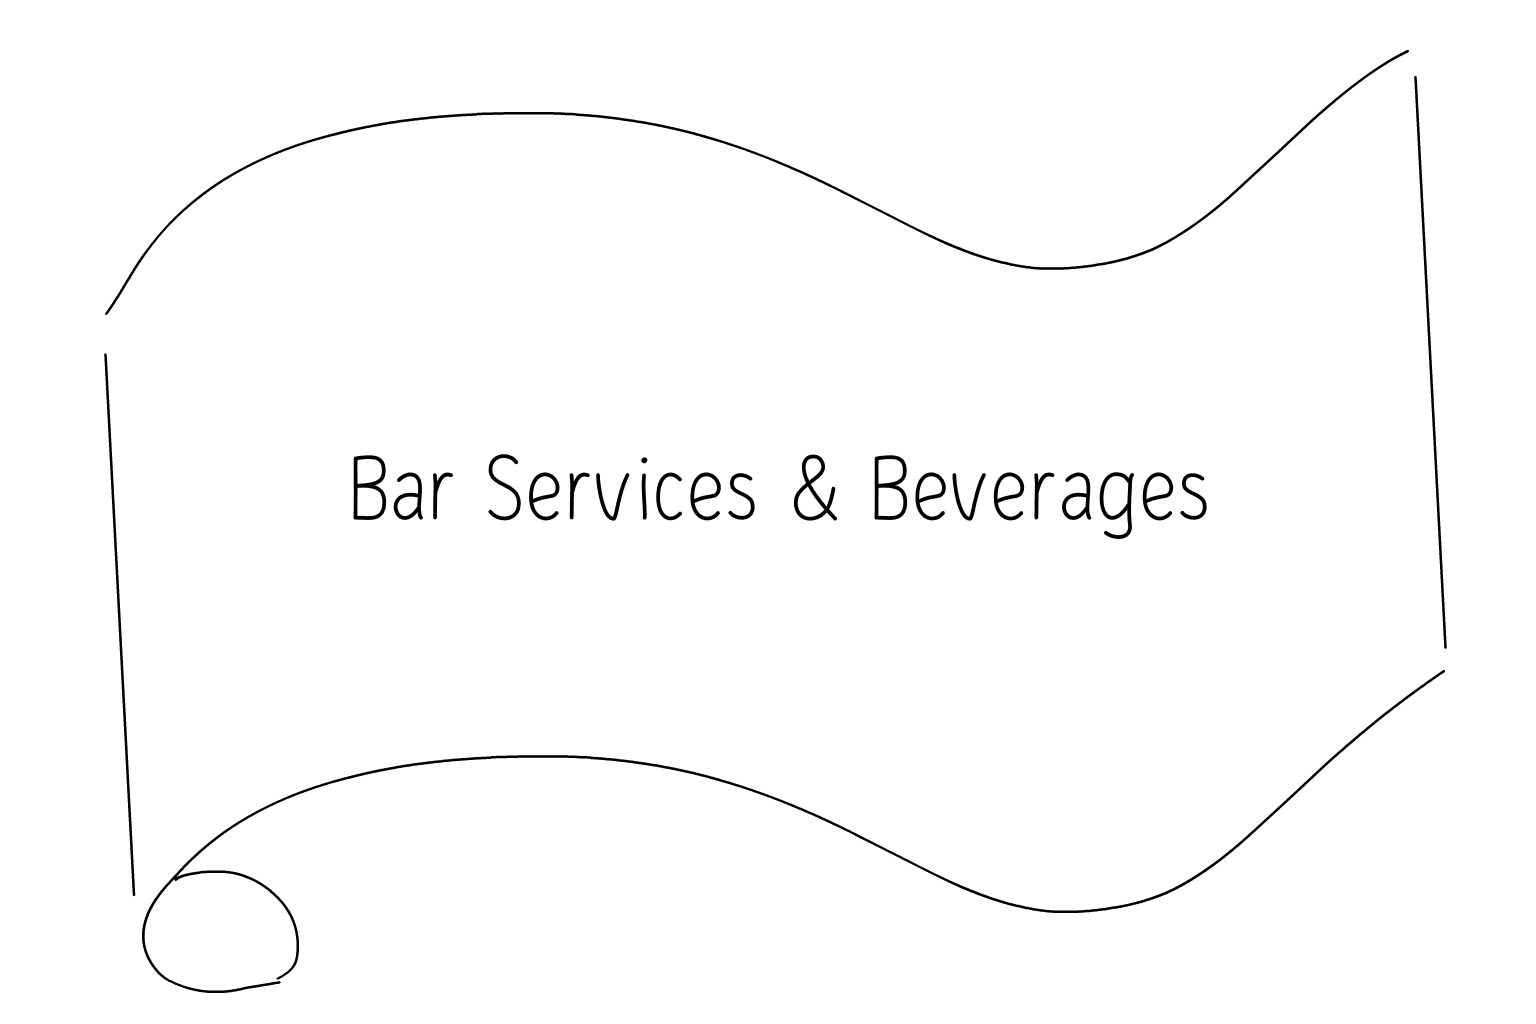 Esküvői bárszolgáltatások és italok illusztrációja